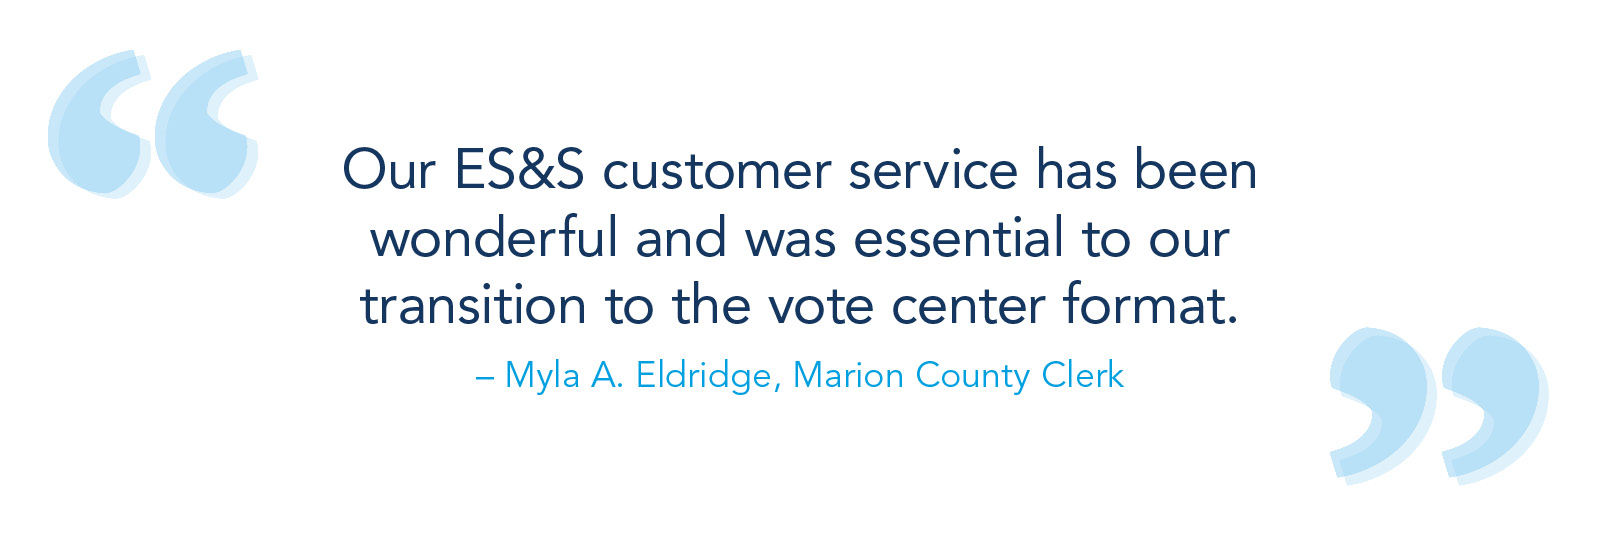 我们的E狗万被端吗S&S客户服务一直很好，对我们过渡到投票中心模式至关重要。